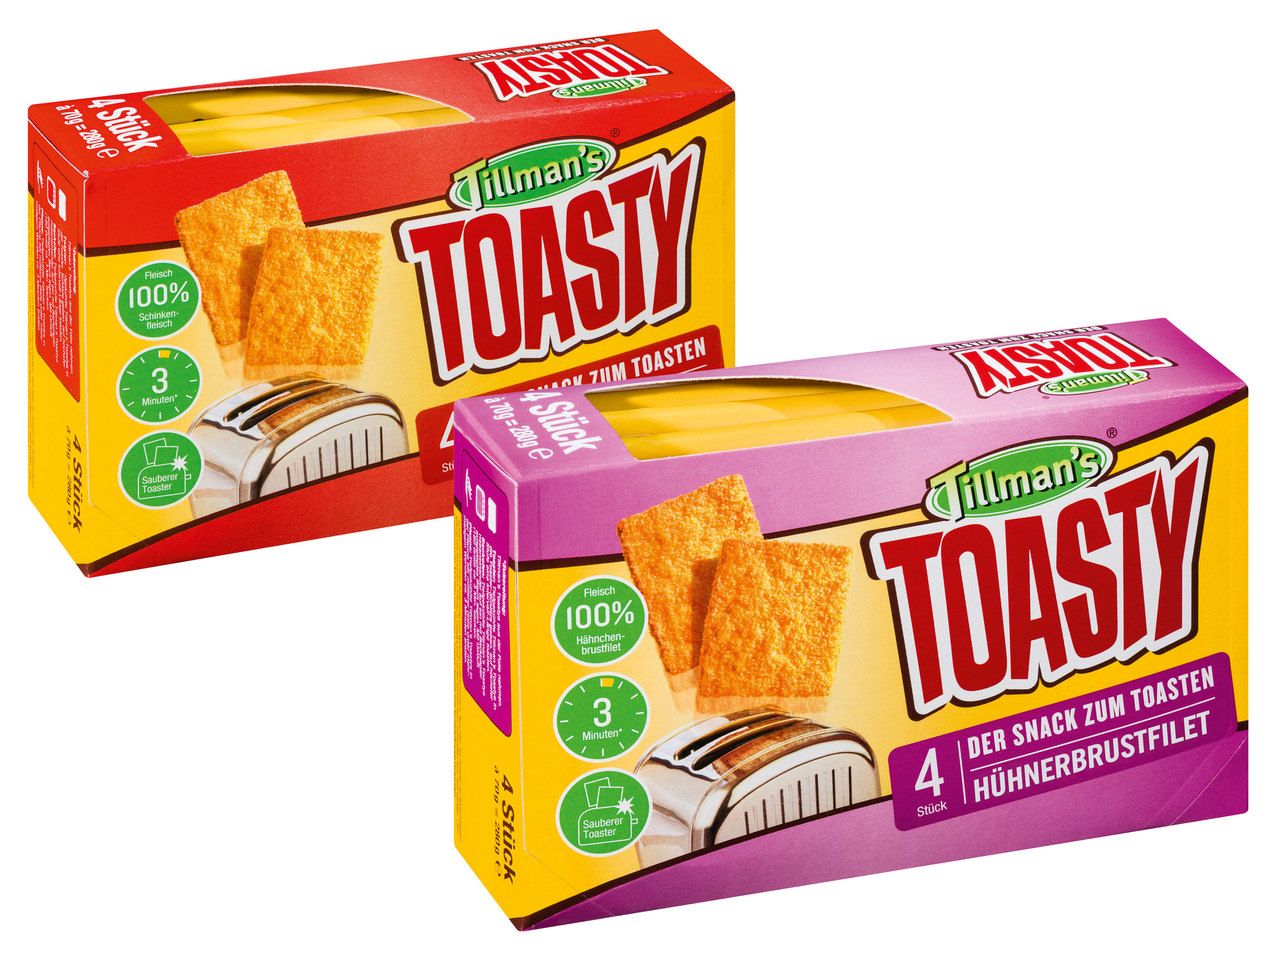 TILLMAN‘S Toasty